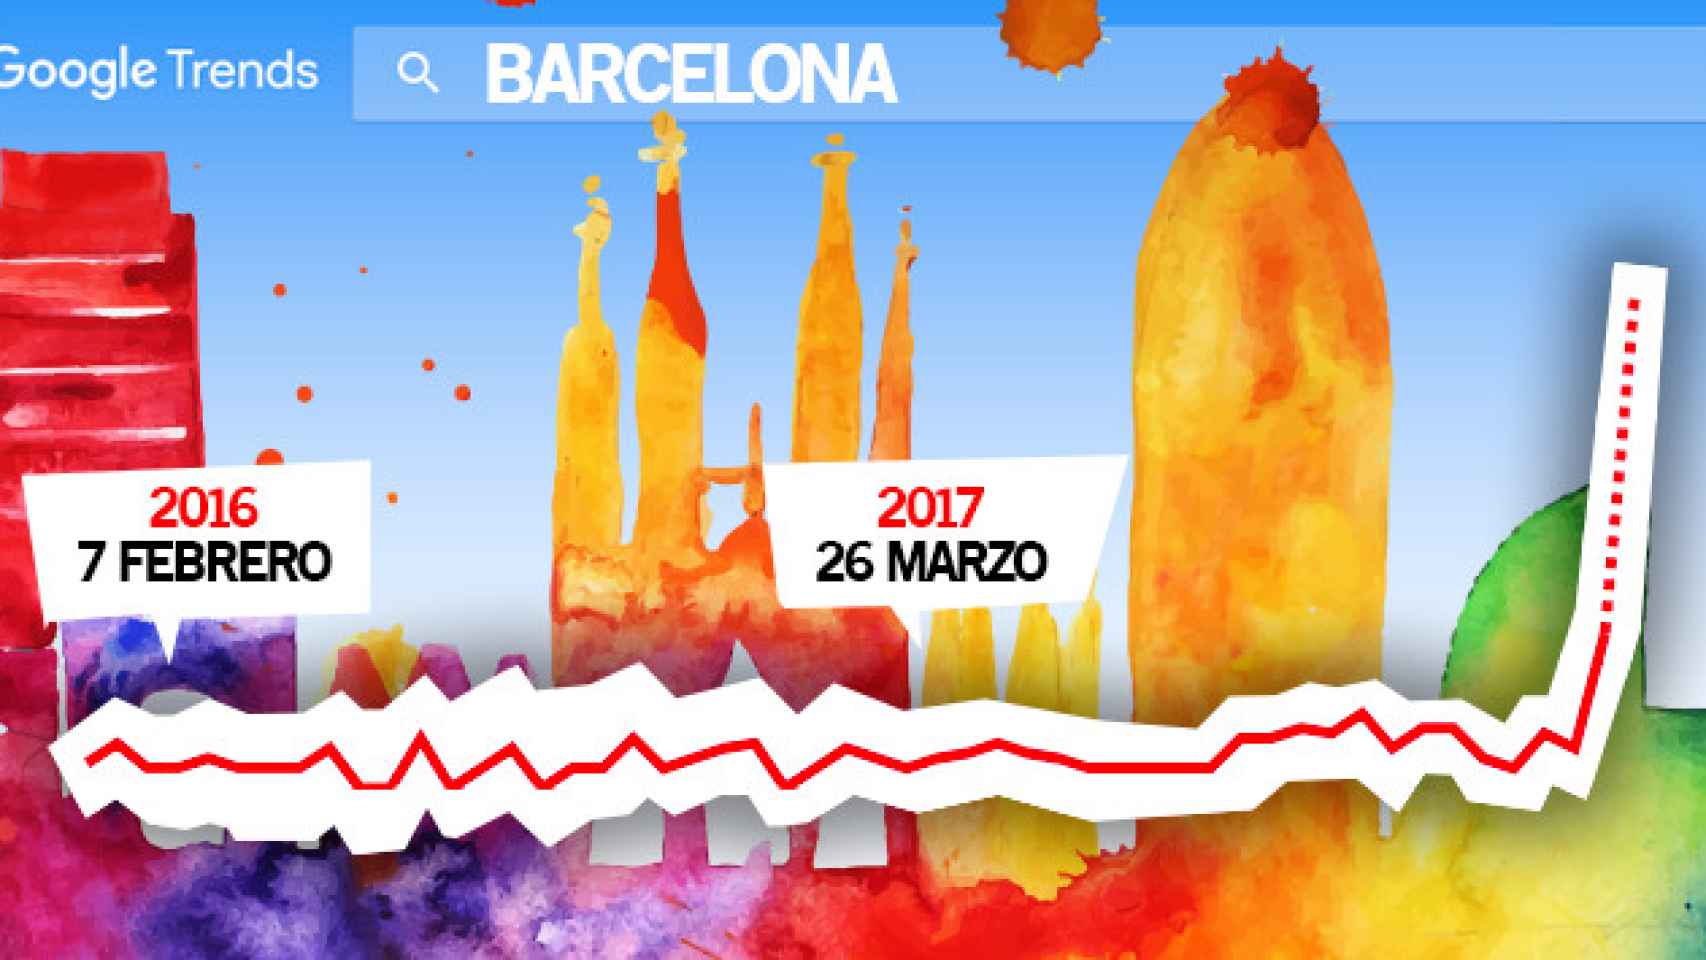 Vista de la ciudad de Barcelona con un gráfico de Google Trends el impacto on line de la huelga en El Prat / CG